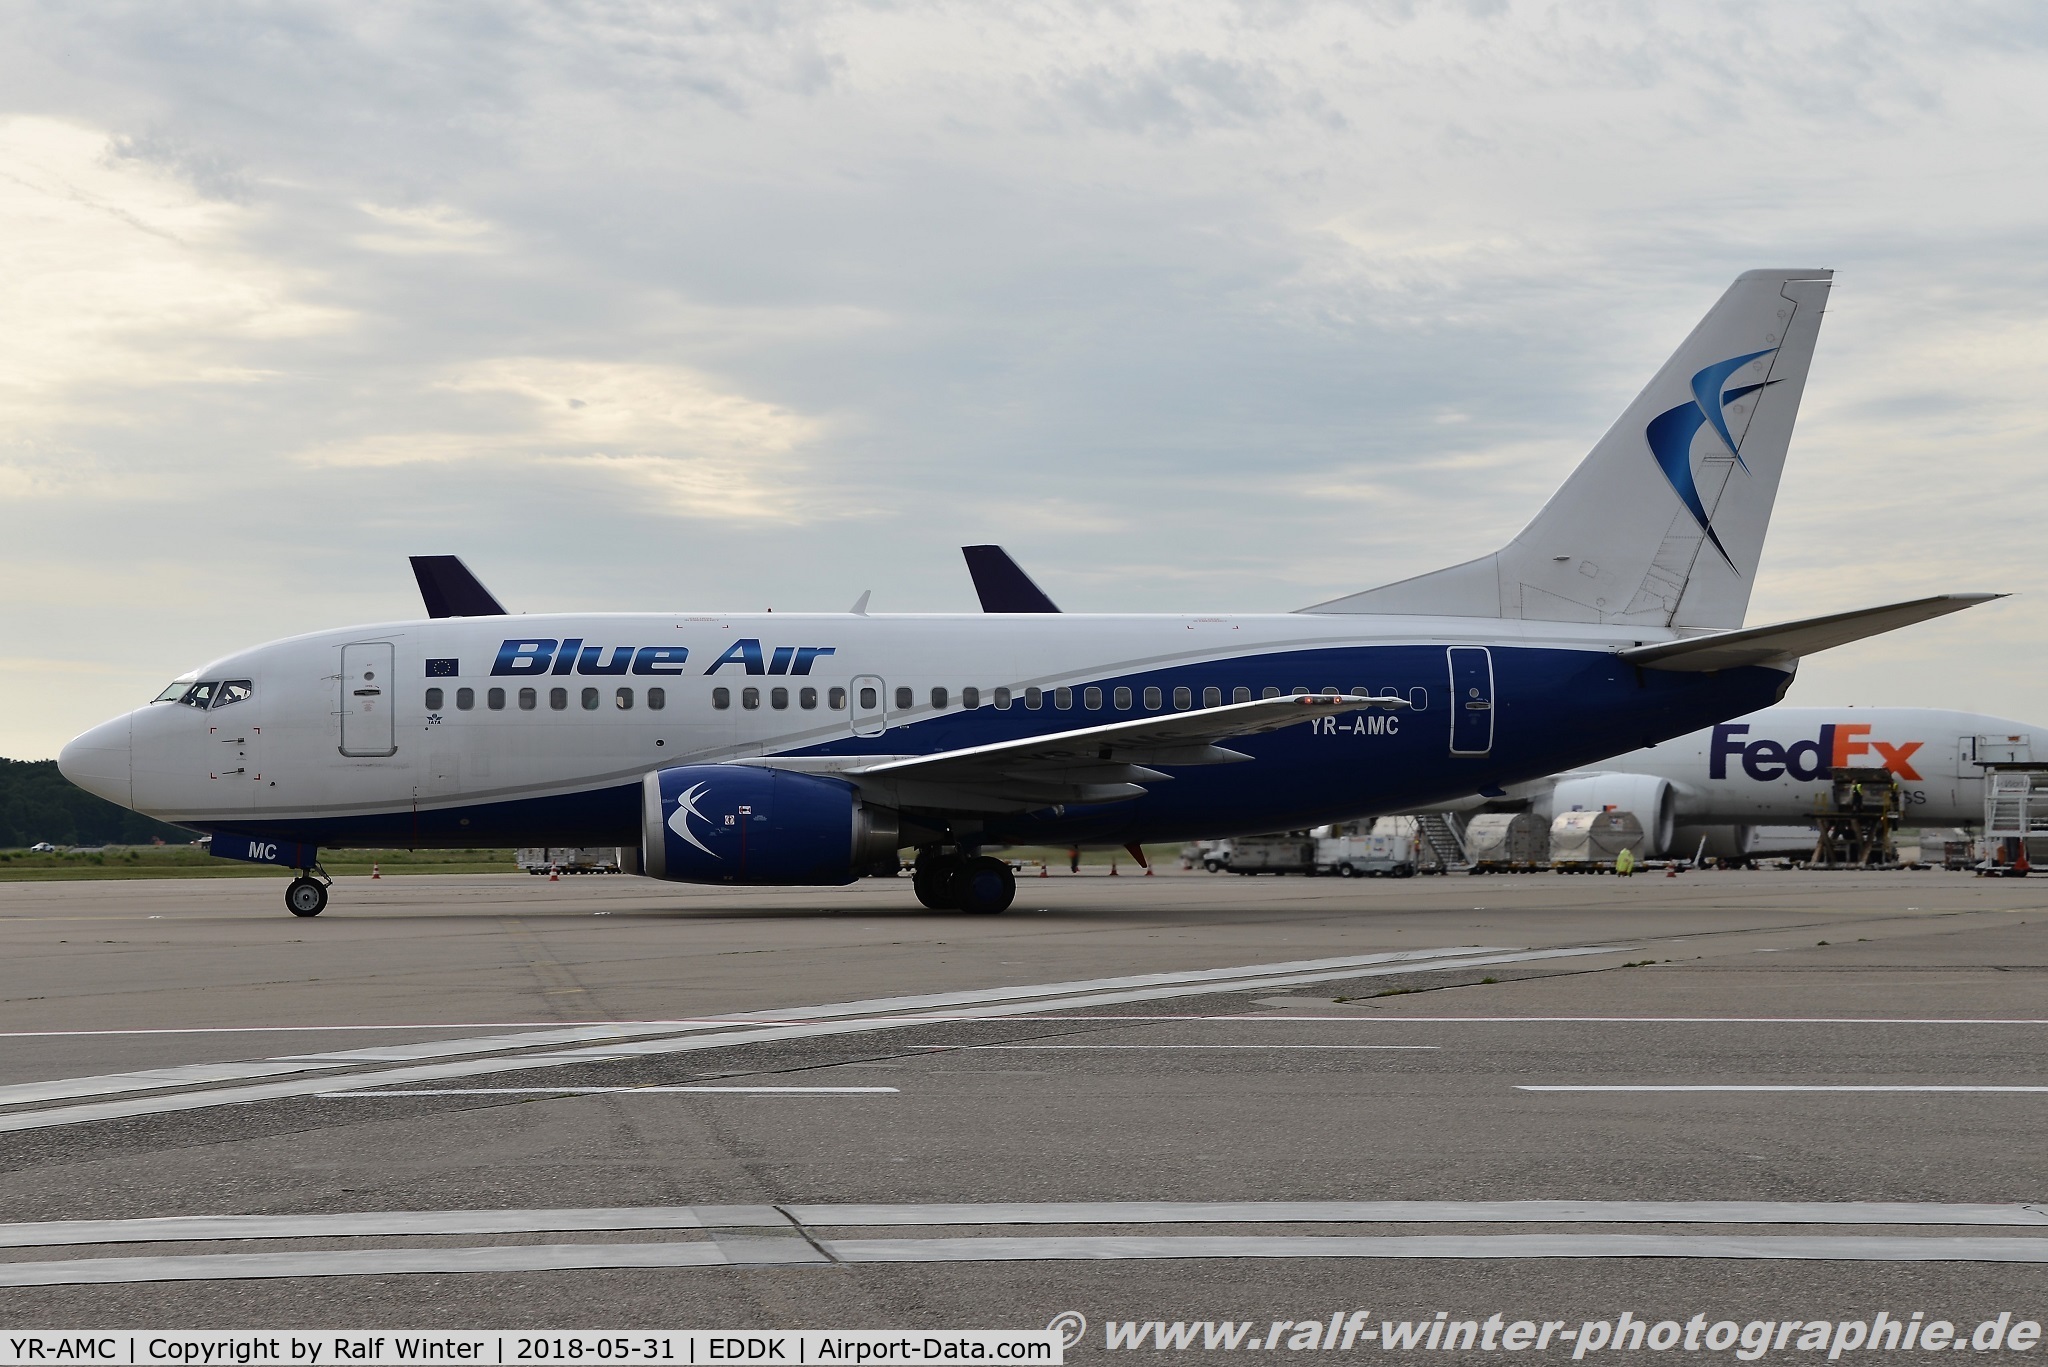 YR-AMC, 1991 Boeing 737-530 C/N 24940, Boeing 737-530 - 0B BMS Blue Air - 24490 - YR-AMC - 31.05.2018 - CGN